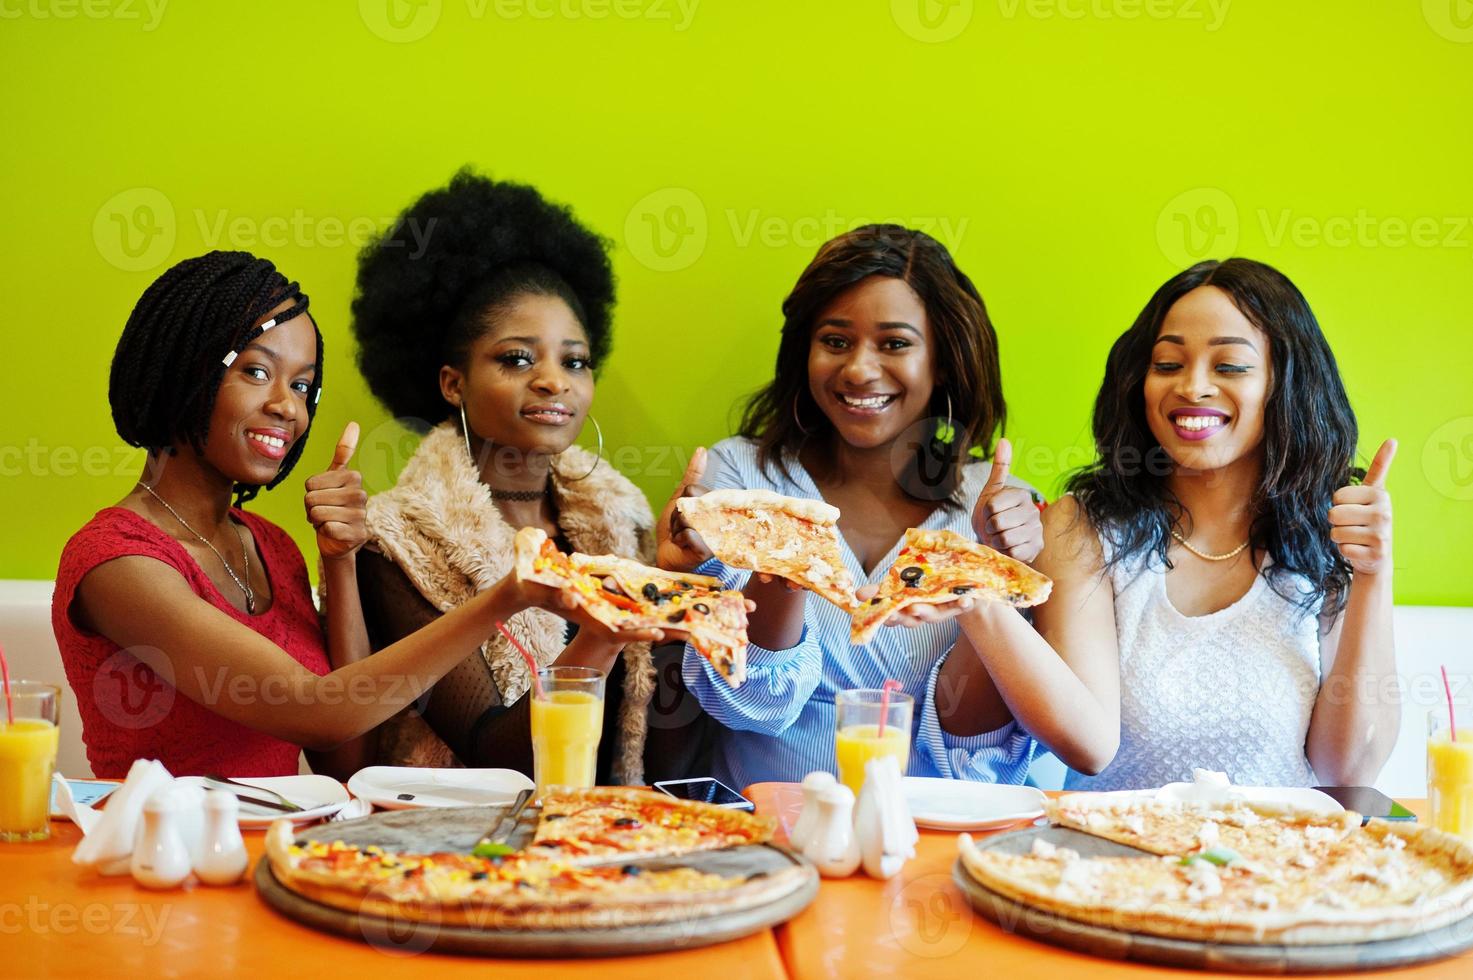 quatro jovens garotas africanas no restaurante colorido brilhante segurando fatias de pizza nas mãos e aparecem o polegar. foto